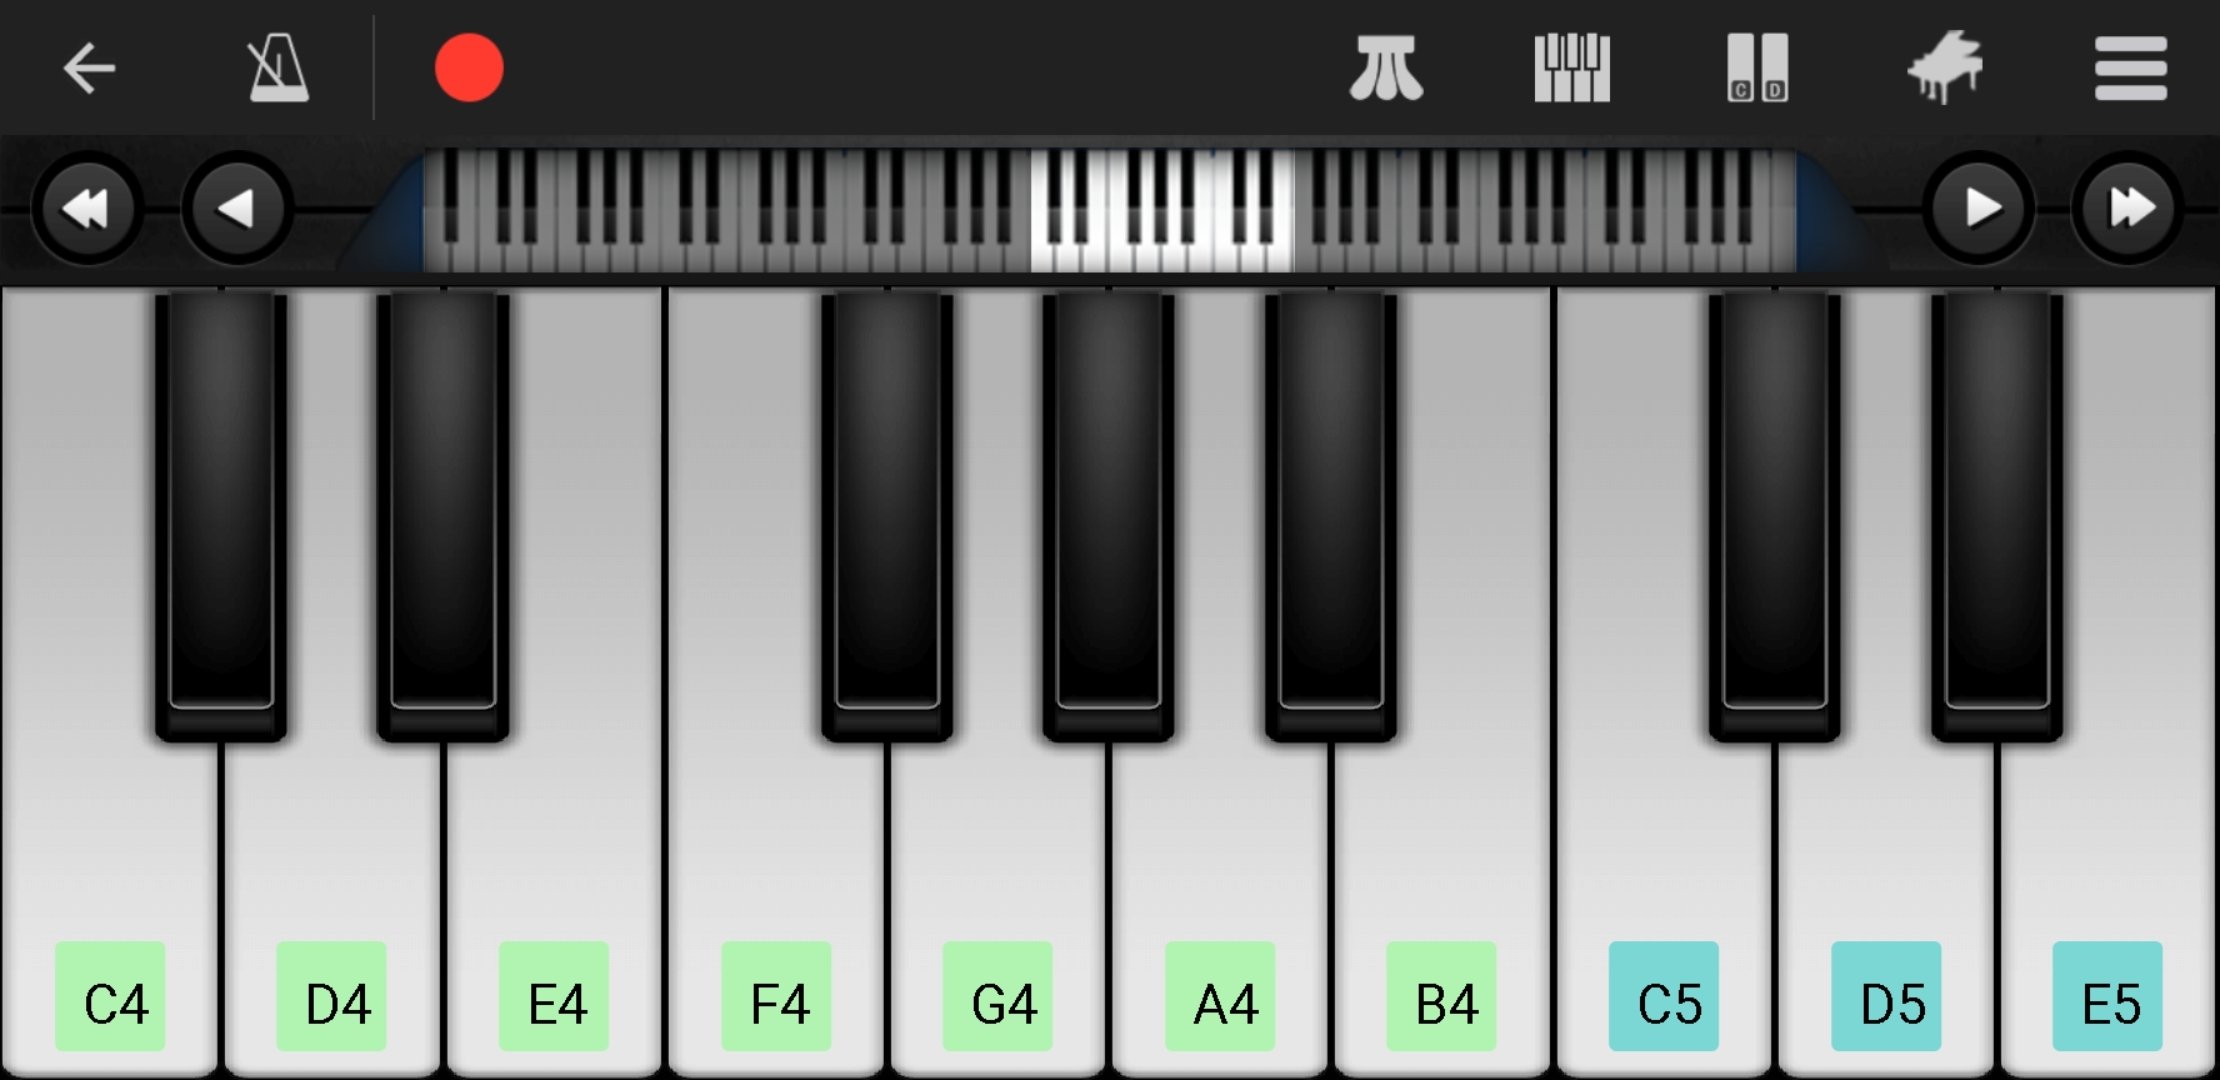 Descargar Piano 7.6 - gratis para Android